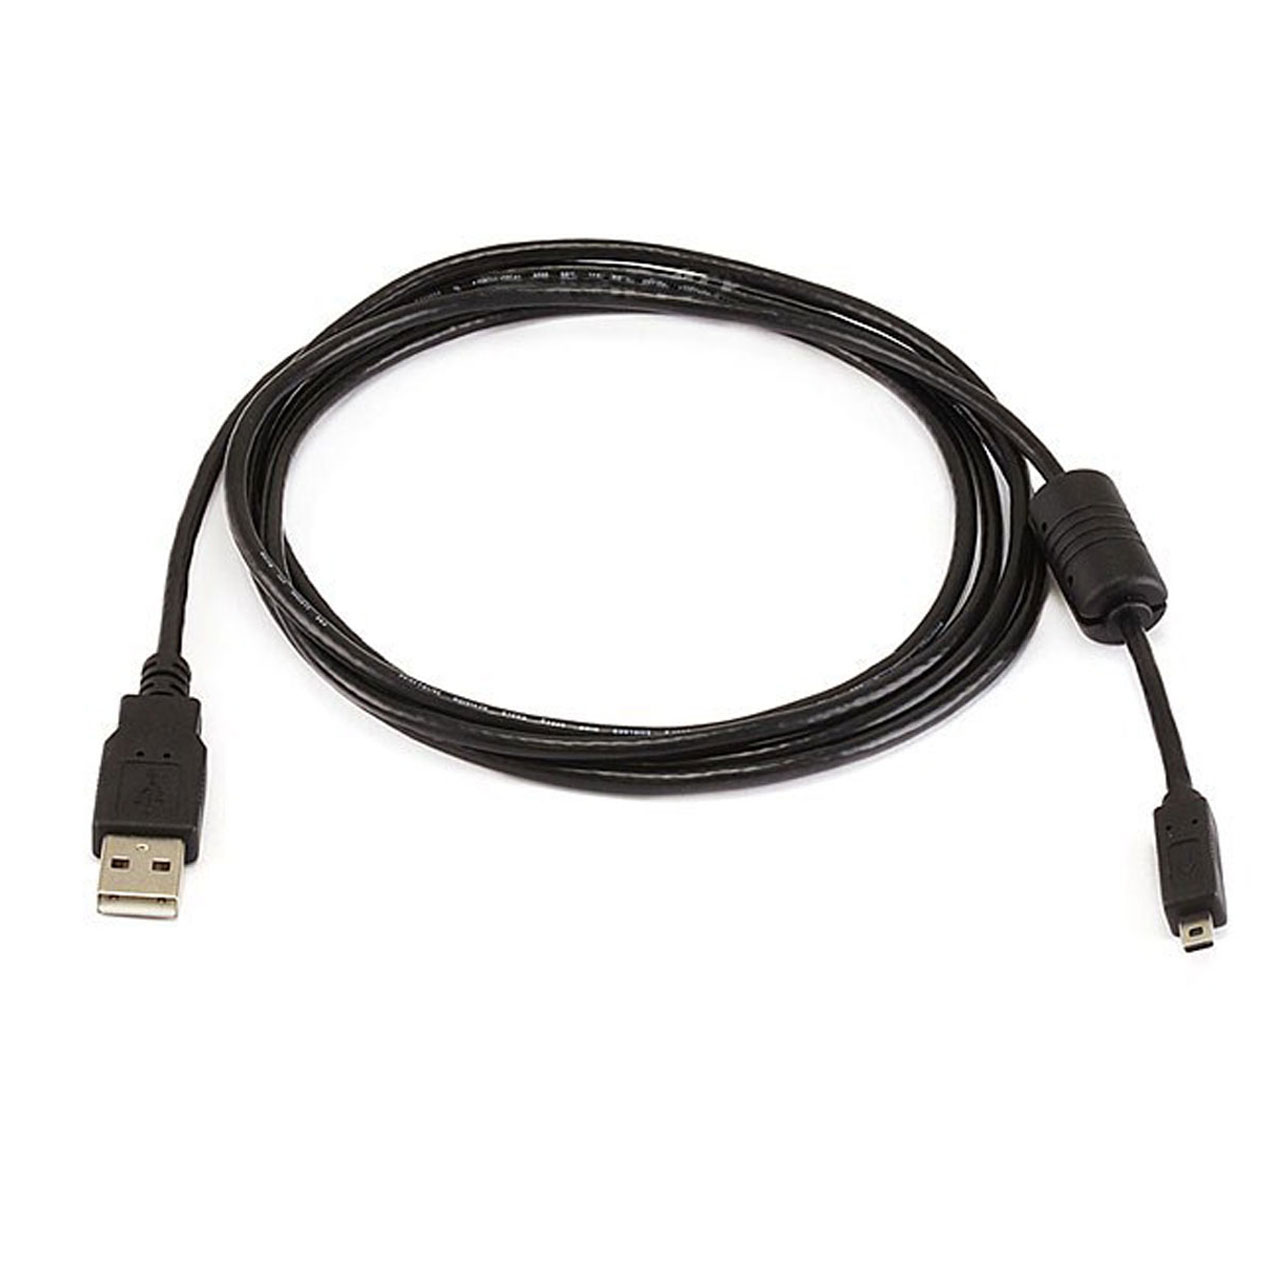 کابل تبدیل USB به Mini USB کد 1890 طول 1 متر